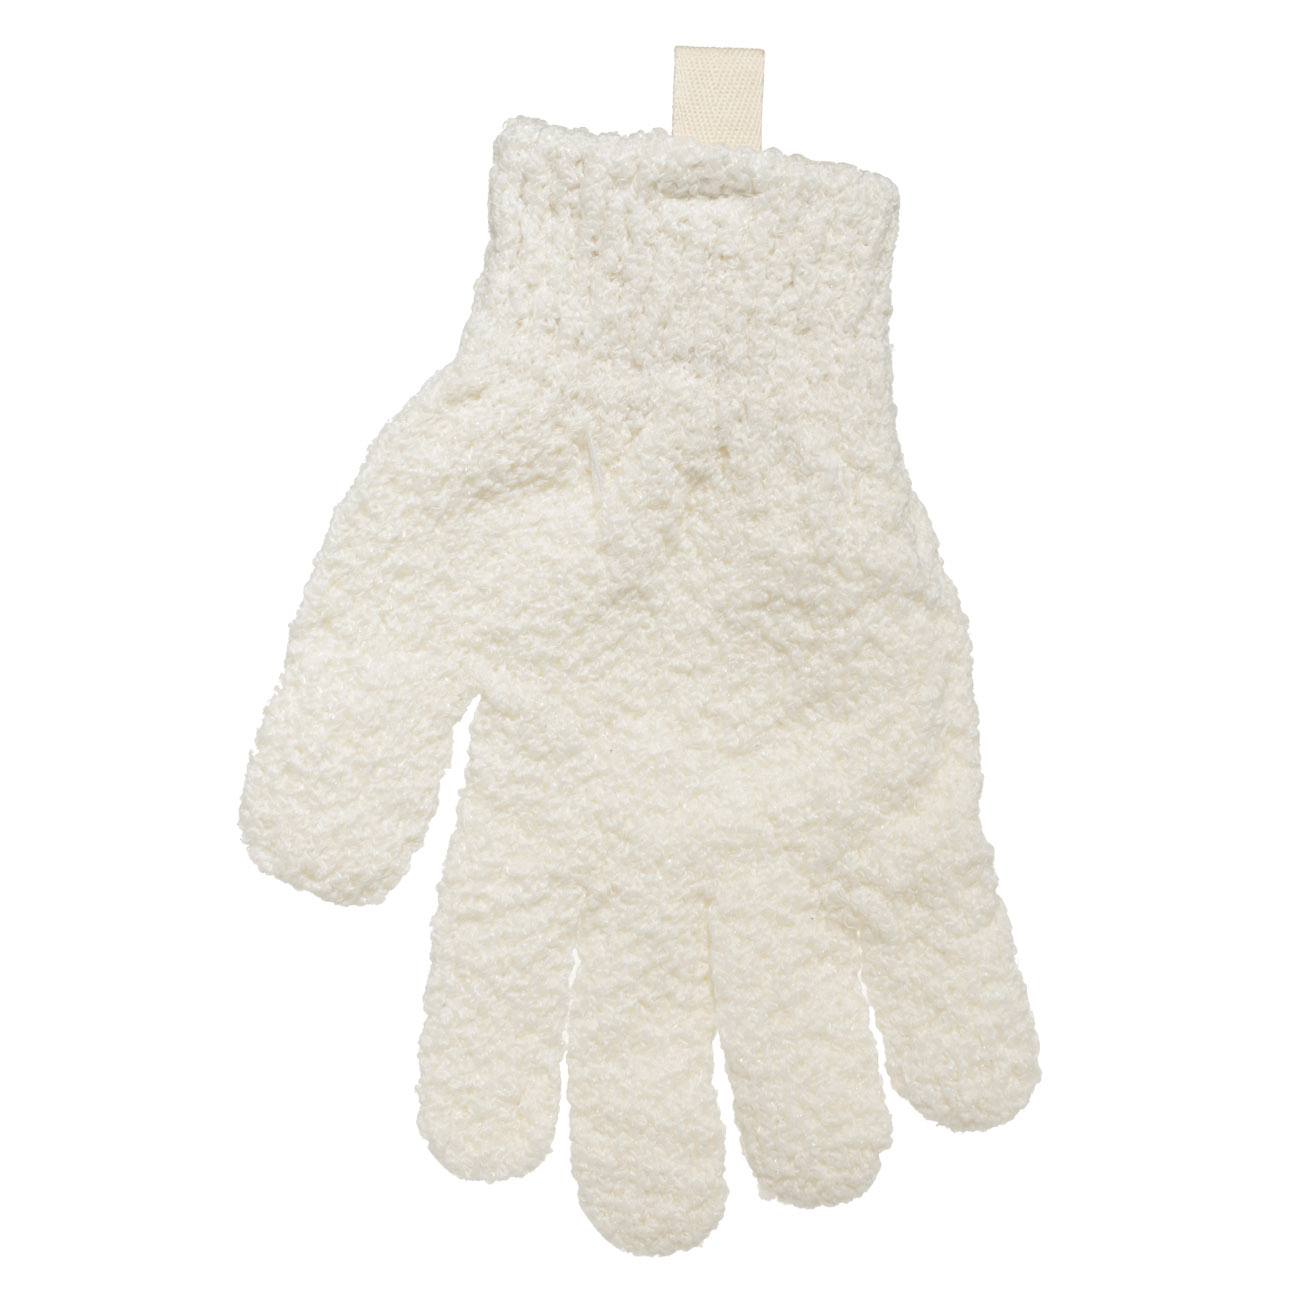 Перчатка для мытья тела, 21 см, 2 шт, отшелушивающая, полиэстер, молочная, Unique spa изображение № 2